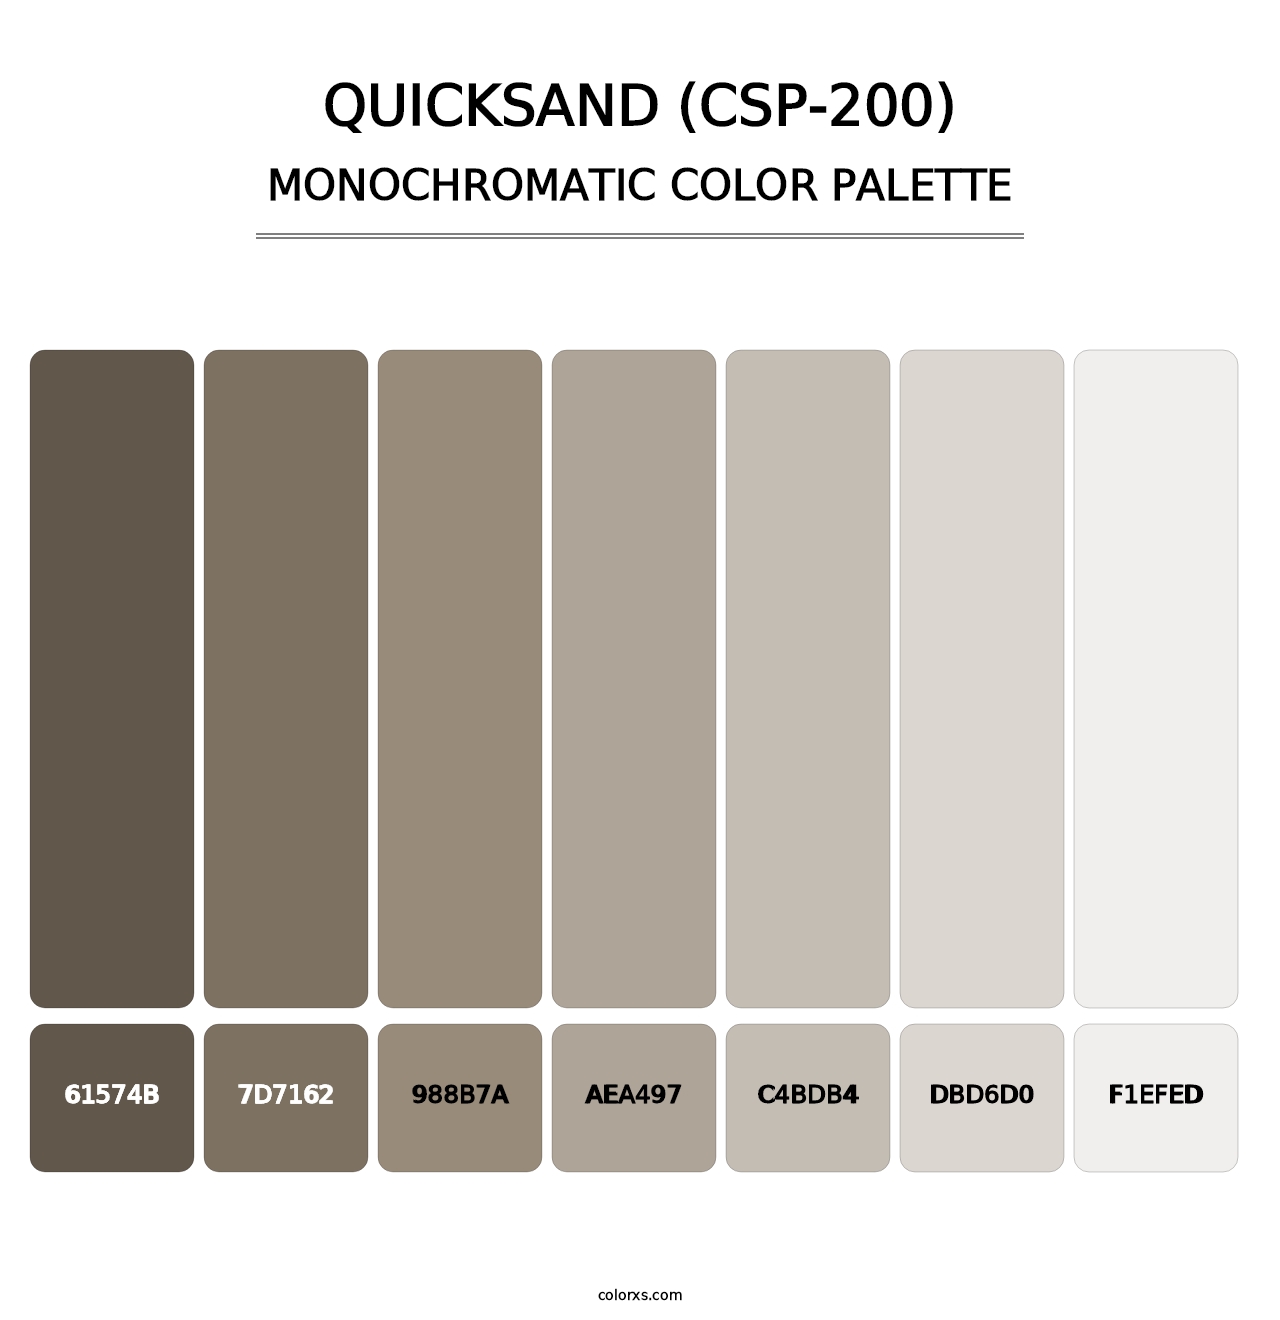 Quicksand (CSP-200) - Monochromatic Color Palette